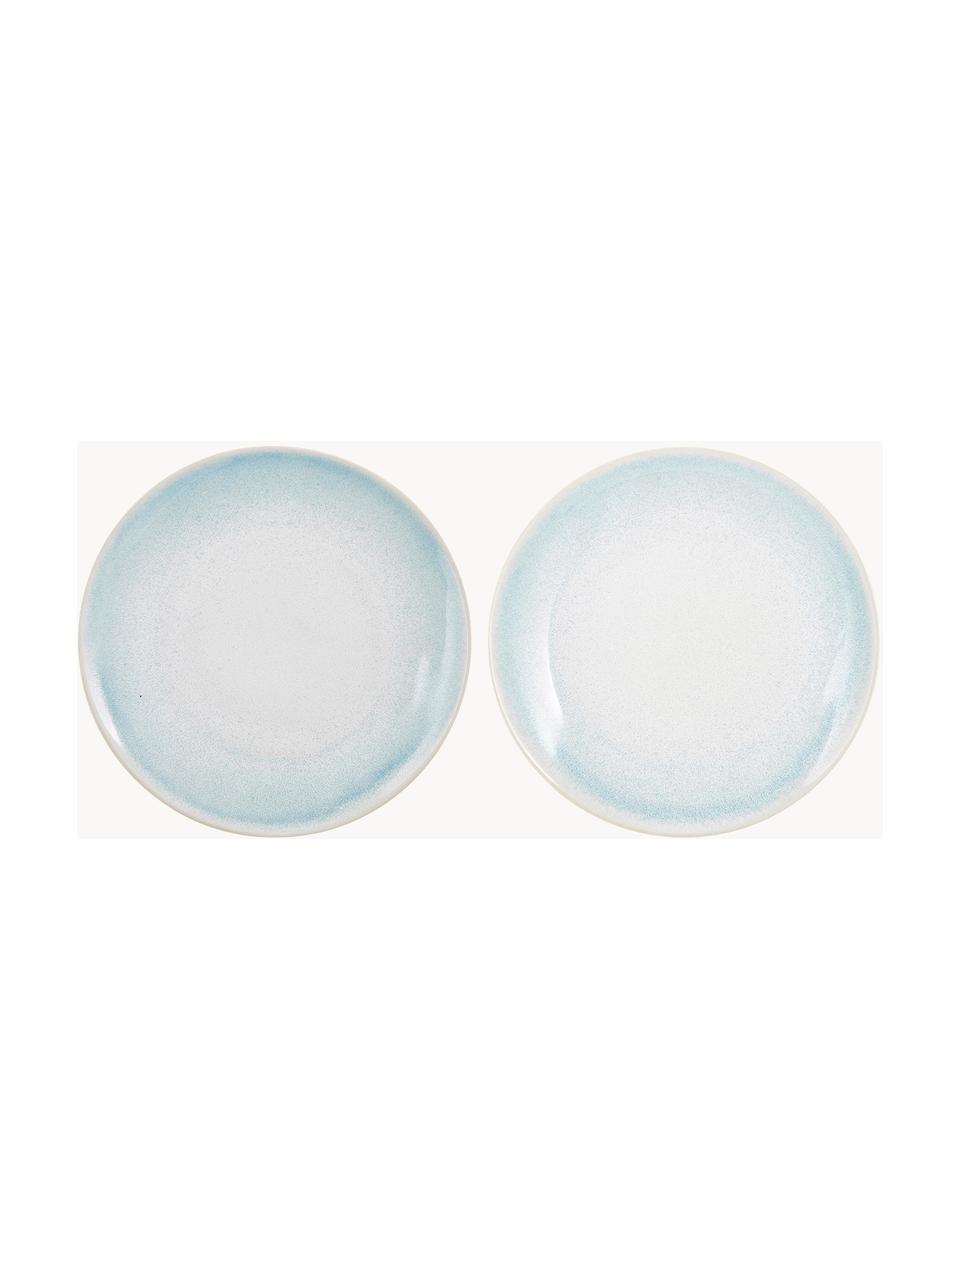 Platos llanos artesanales Amalia, 2 uds., Cerámica, Azul claro, blanco crema, Ø 25 cm